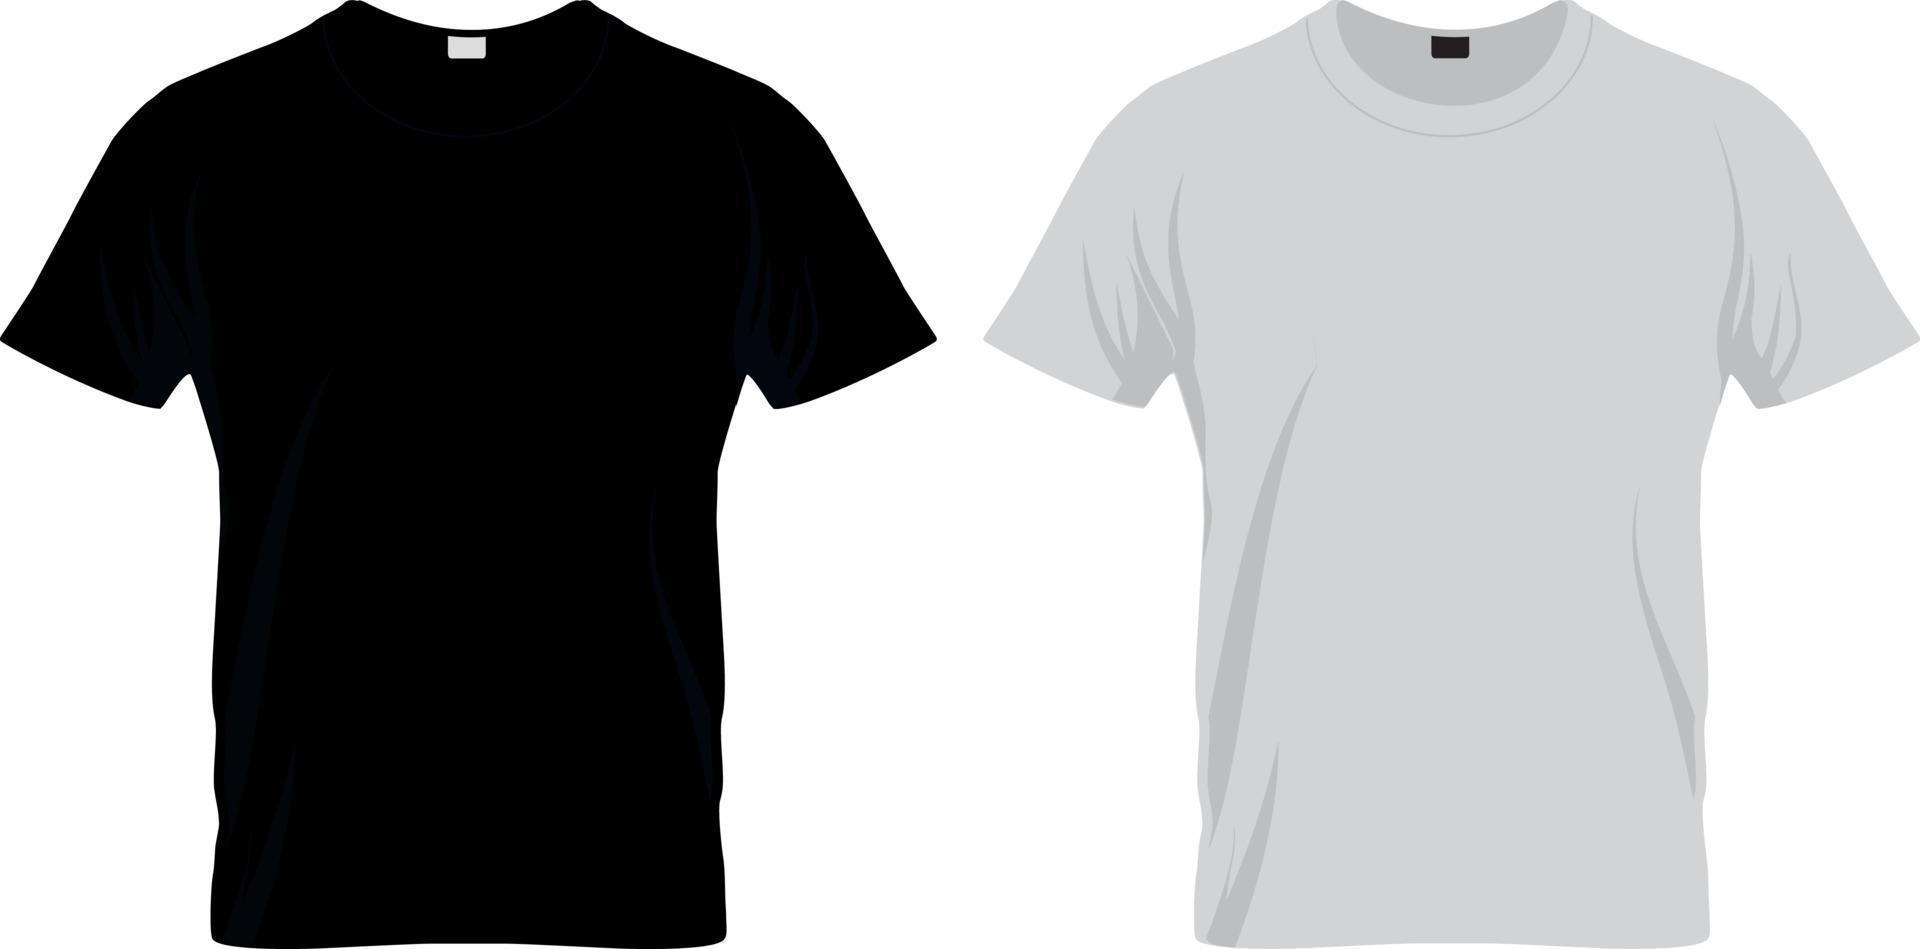 zwart-wit leeg t-shirt kledingontwerp. nieuwe sport unisex textielvorm met u-hals kraag voor man en vrouw. reclame- of advertentiesjabloon op doek en modethema vector